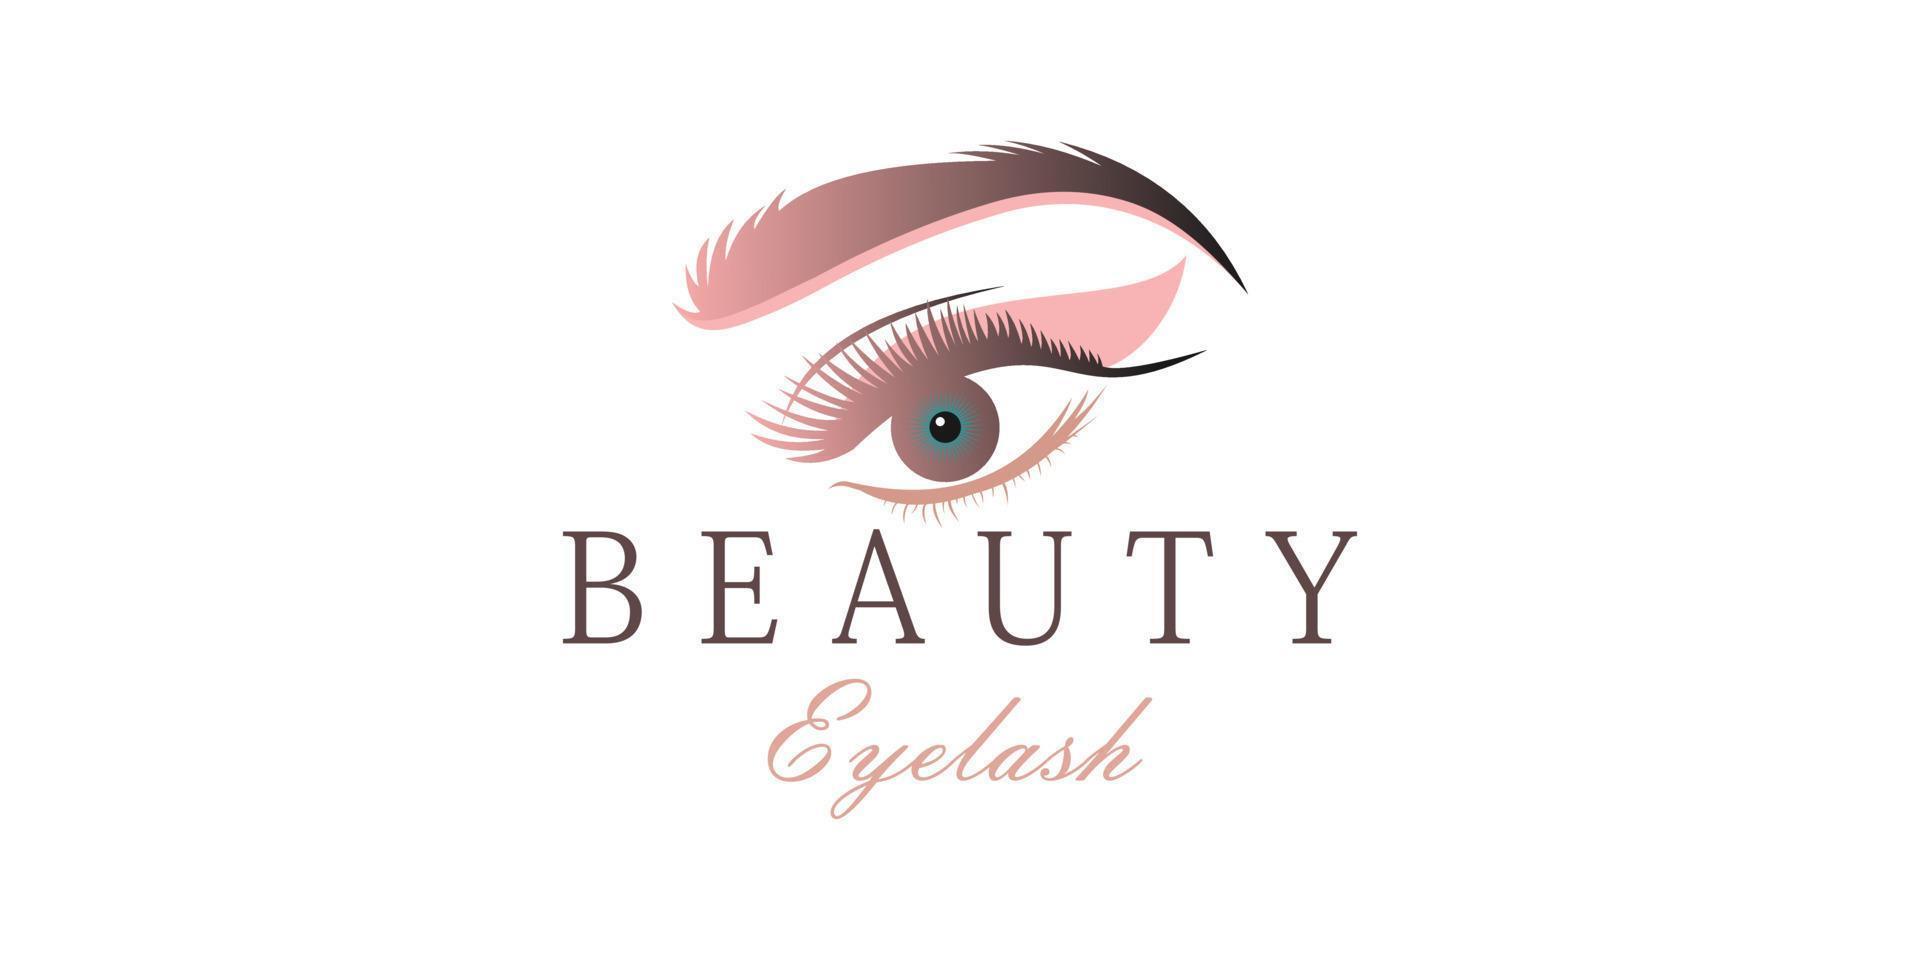 Eyelash extension logo design template for beauty salon with creative concept vector